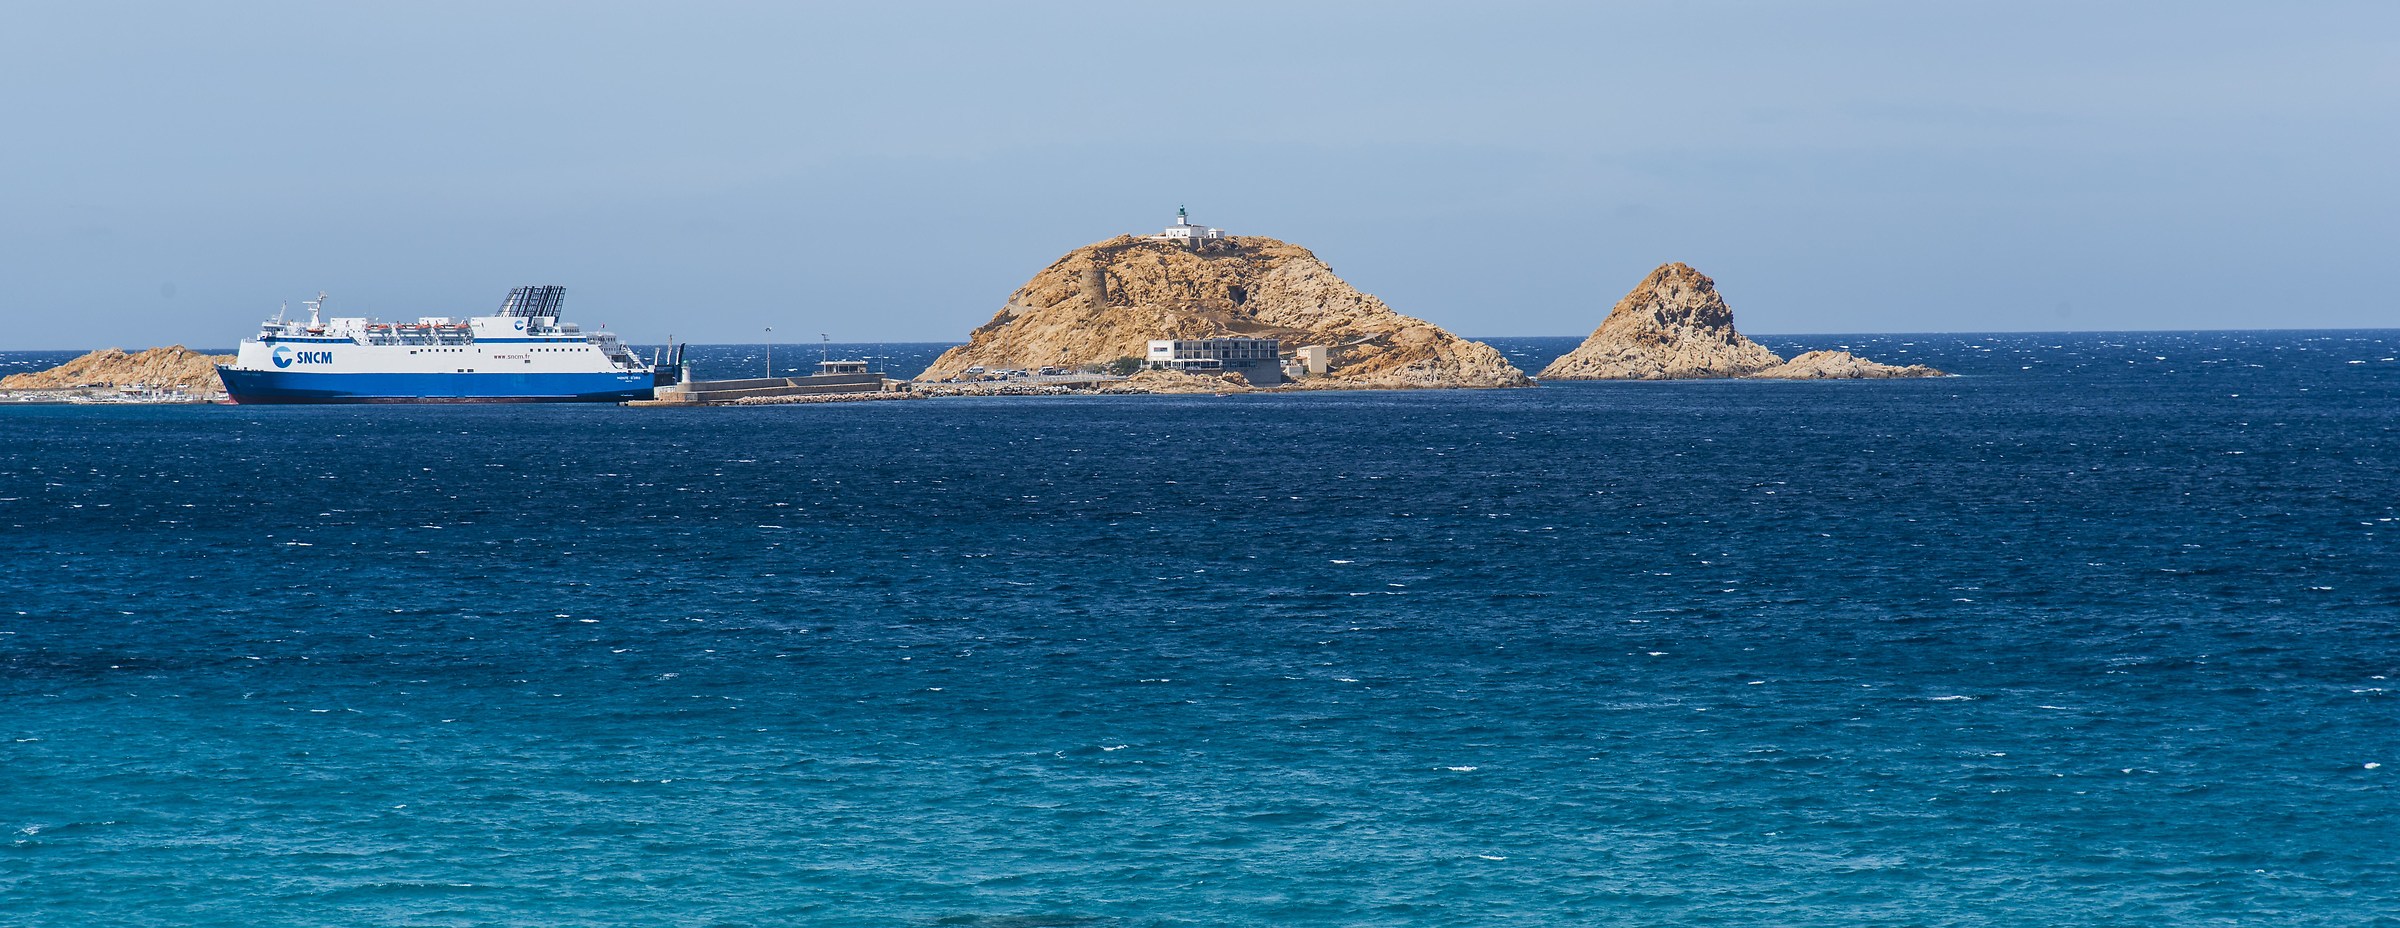 Isola Rossa (Corsica)...